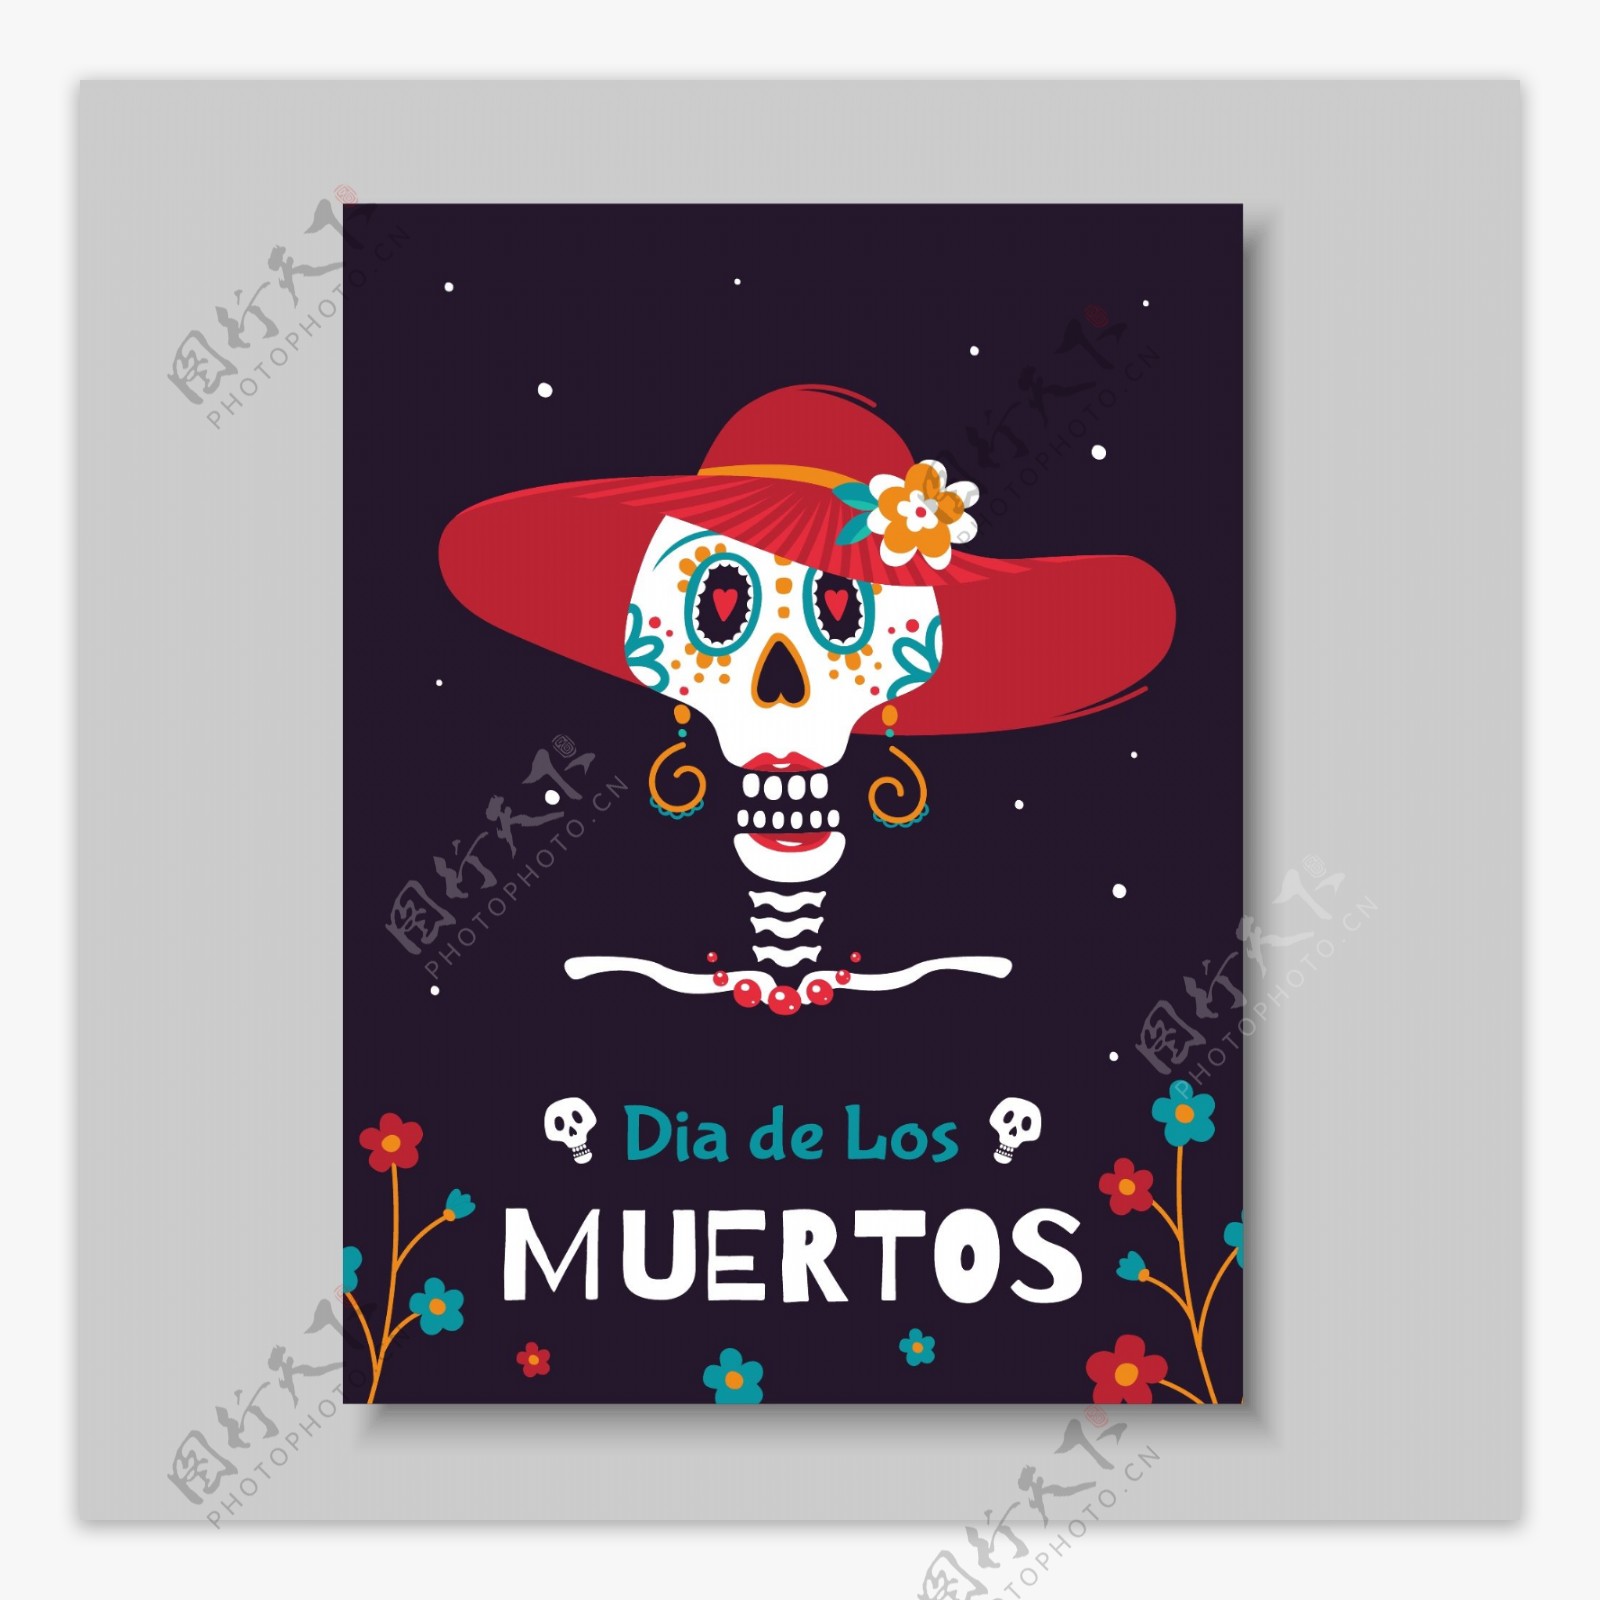 死亡的墨西哥日的节日海报